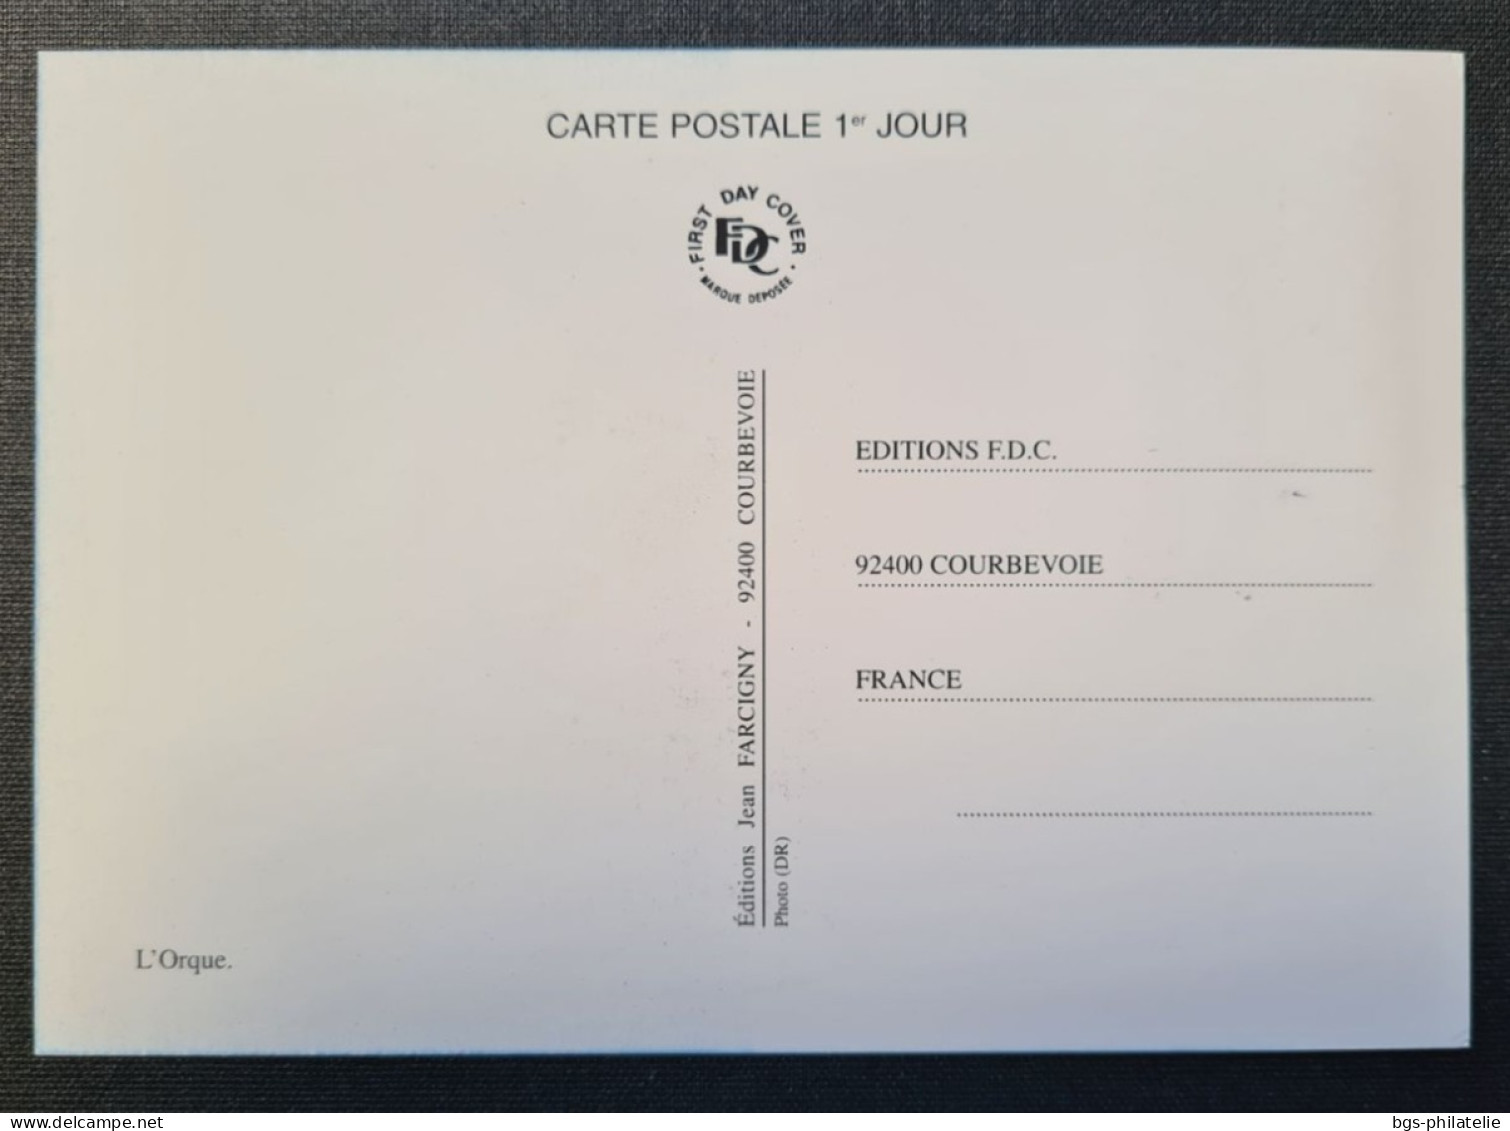 TAAF, T Numéro 748 Oblitéré De Kerguelen Le 15/05/2015 Sur Carte. - Lettres & Documents